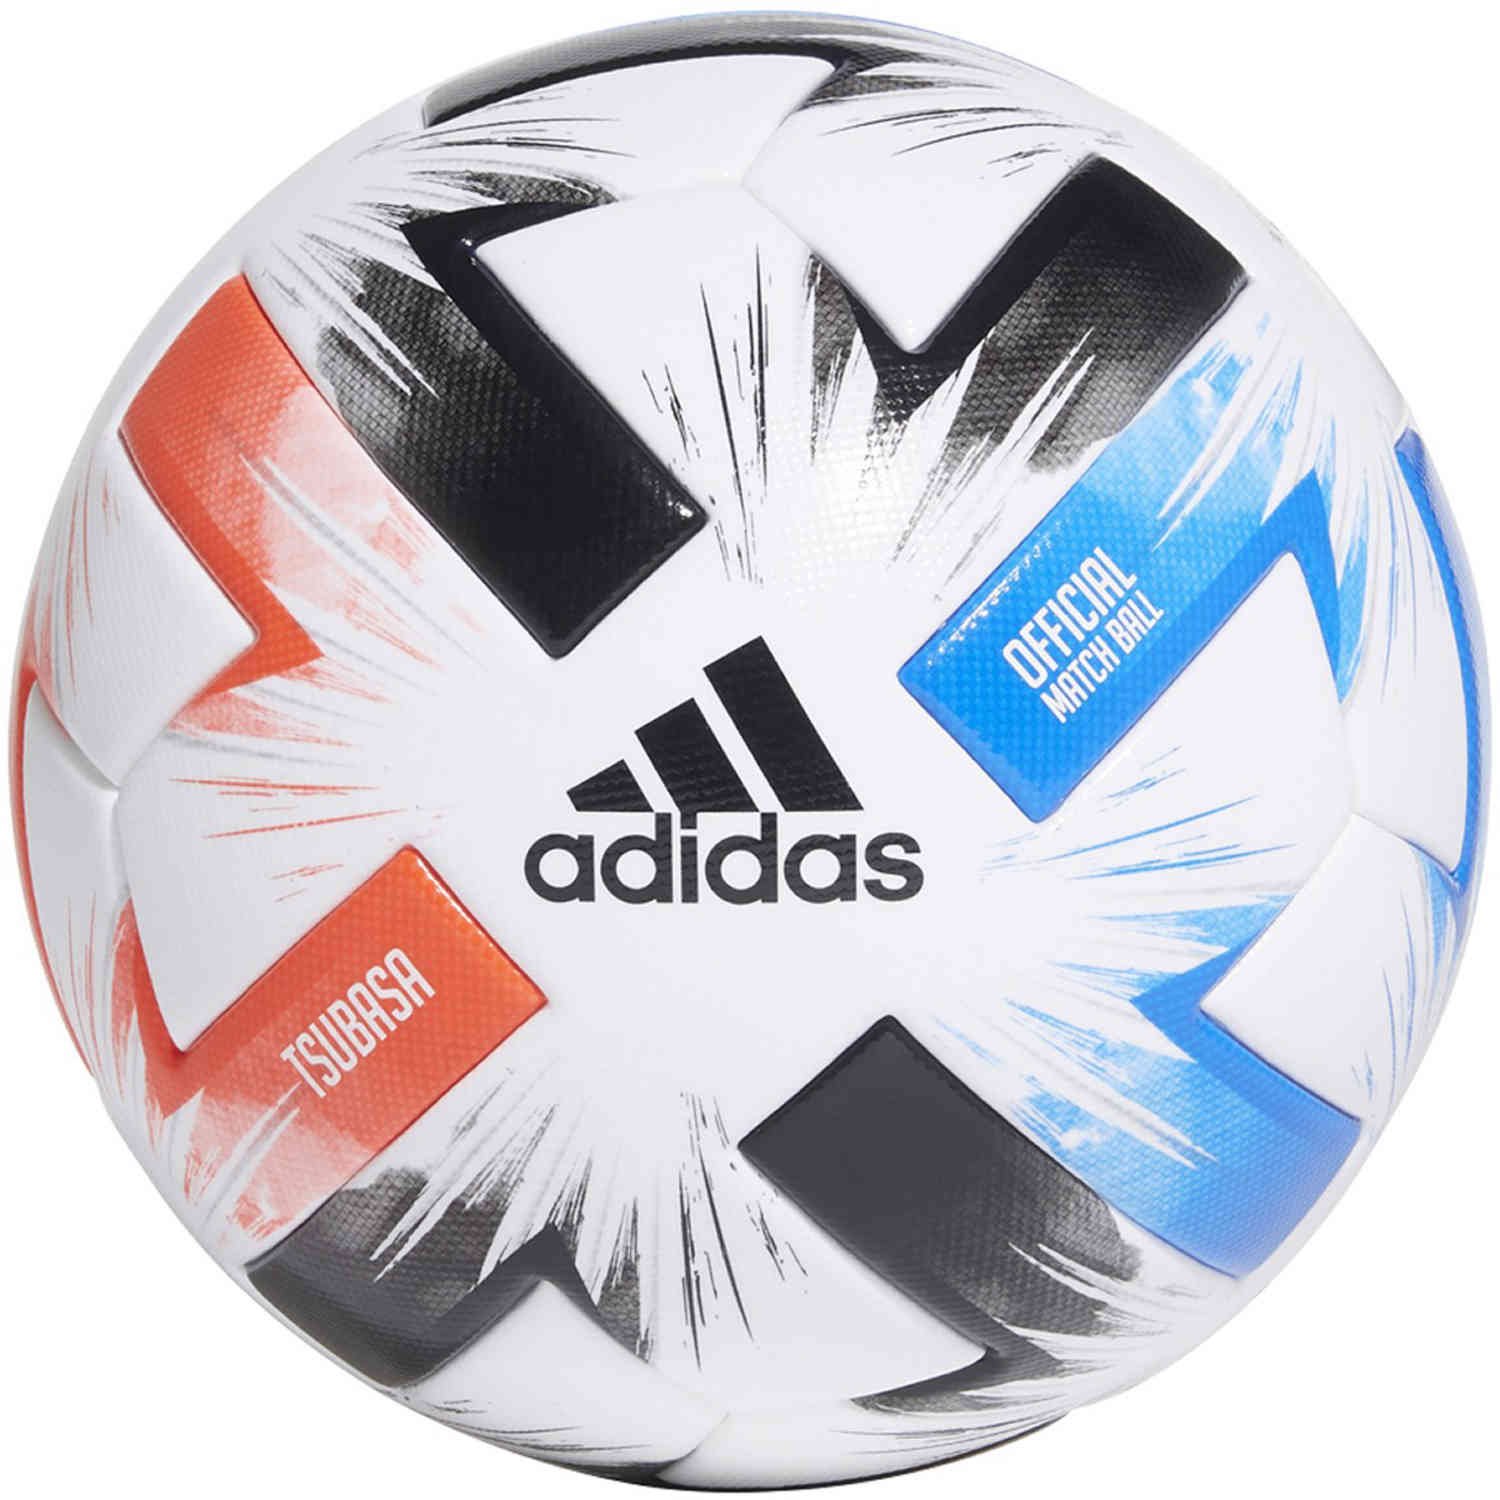 official match soccer ball